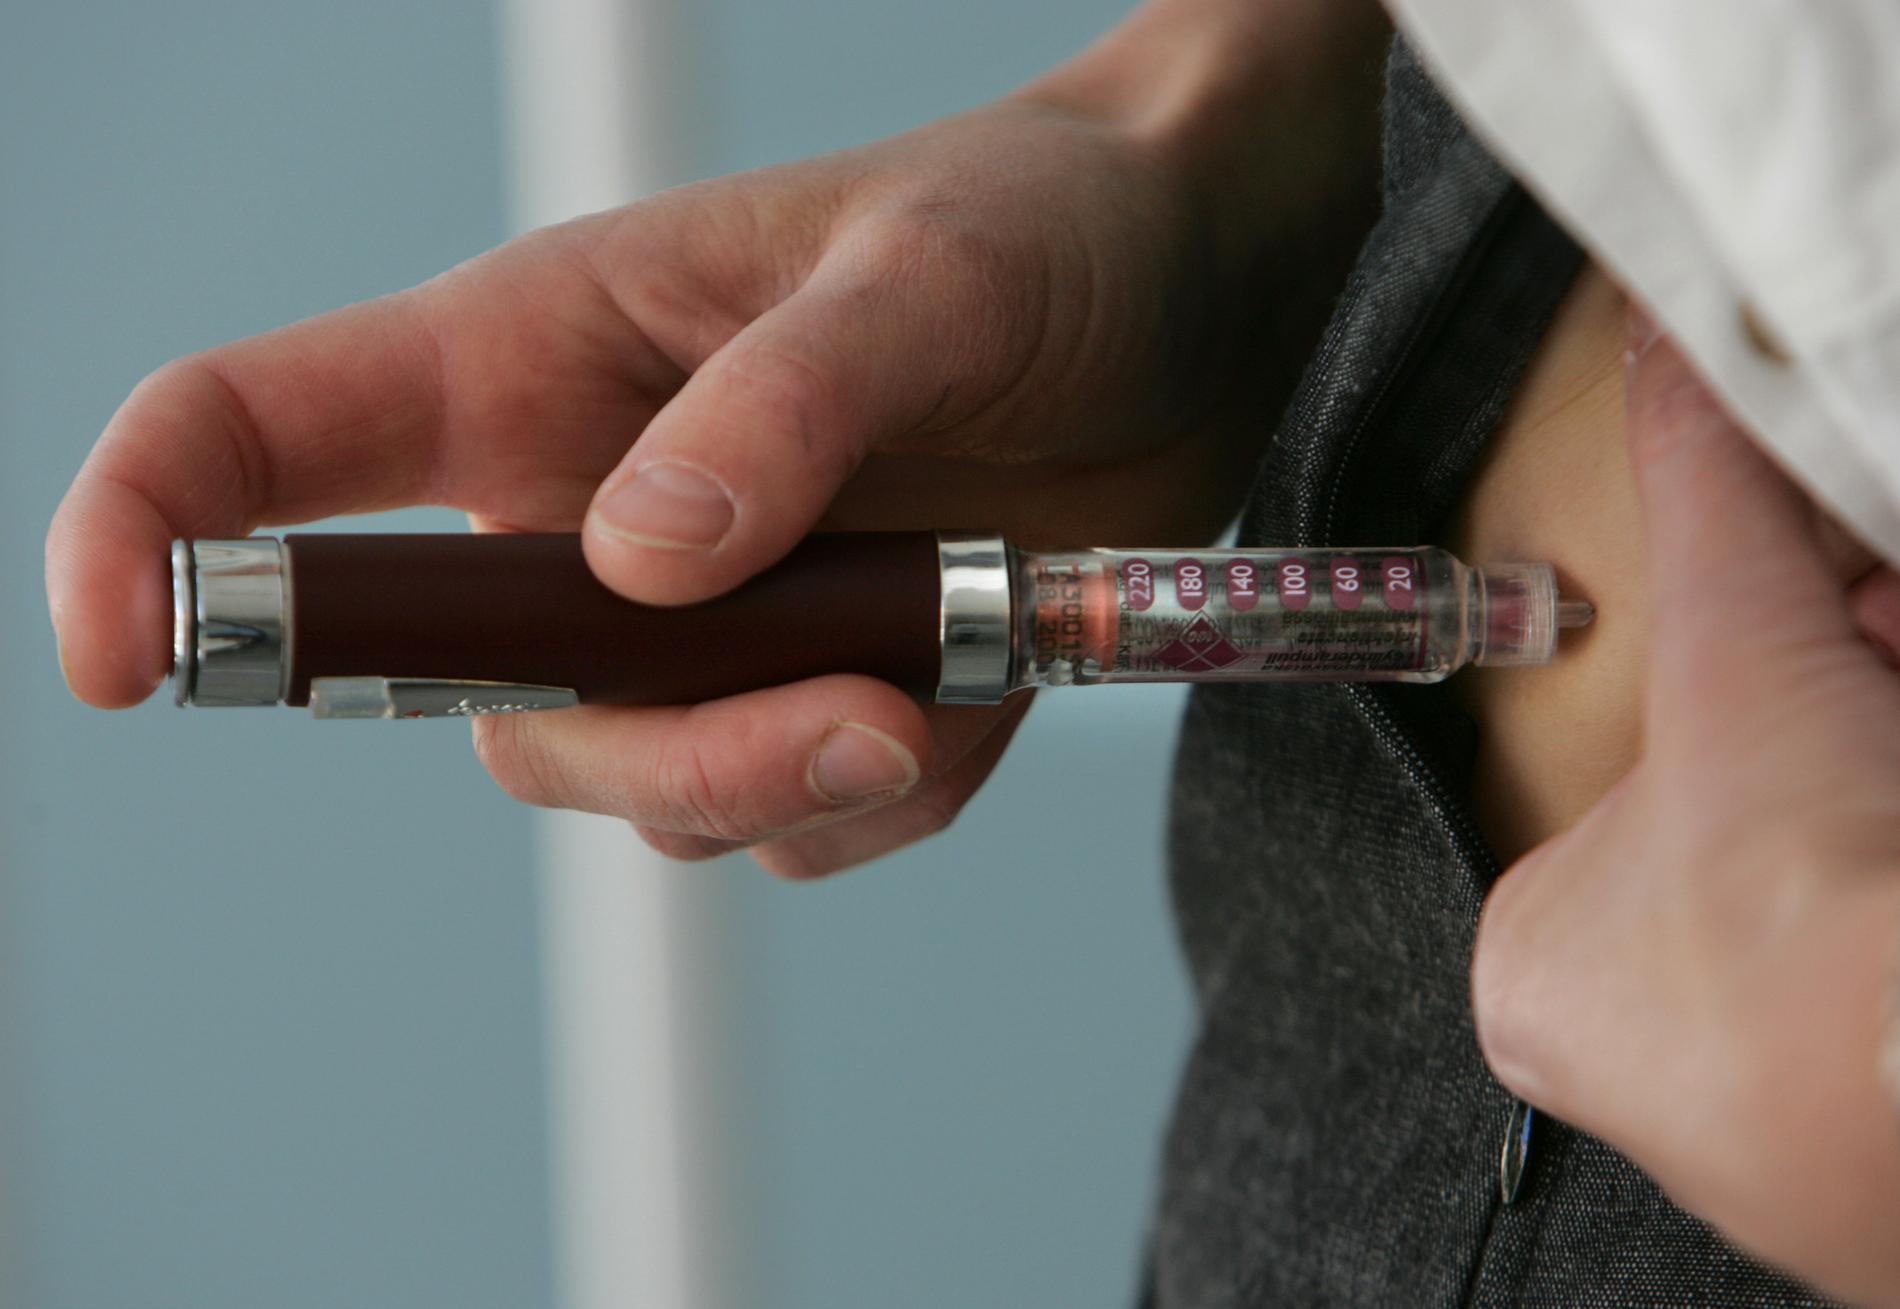 Insulinpenna med engångsnål är ett viktigt hjälpmedel för många diabetiker. Nu testas en smart penna som kan kommunicera med läkaren om värden och insulindoser. Arkivbild.